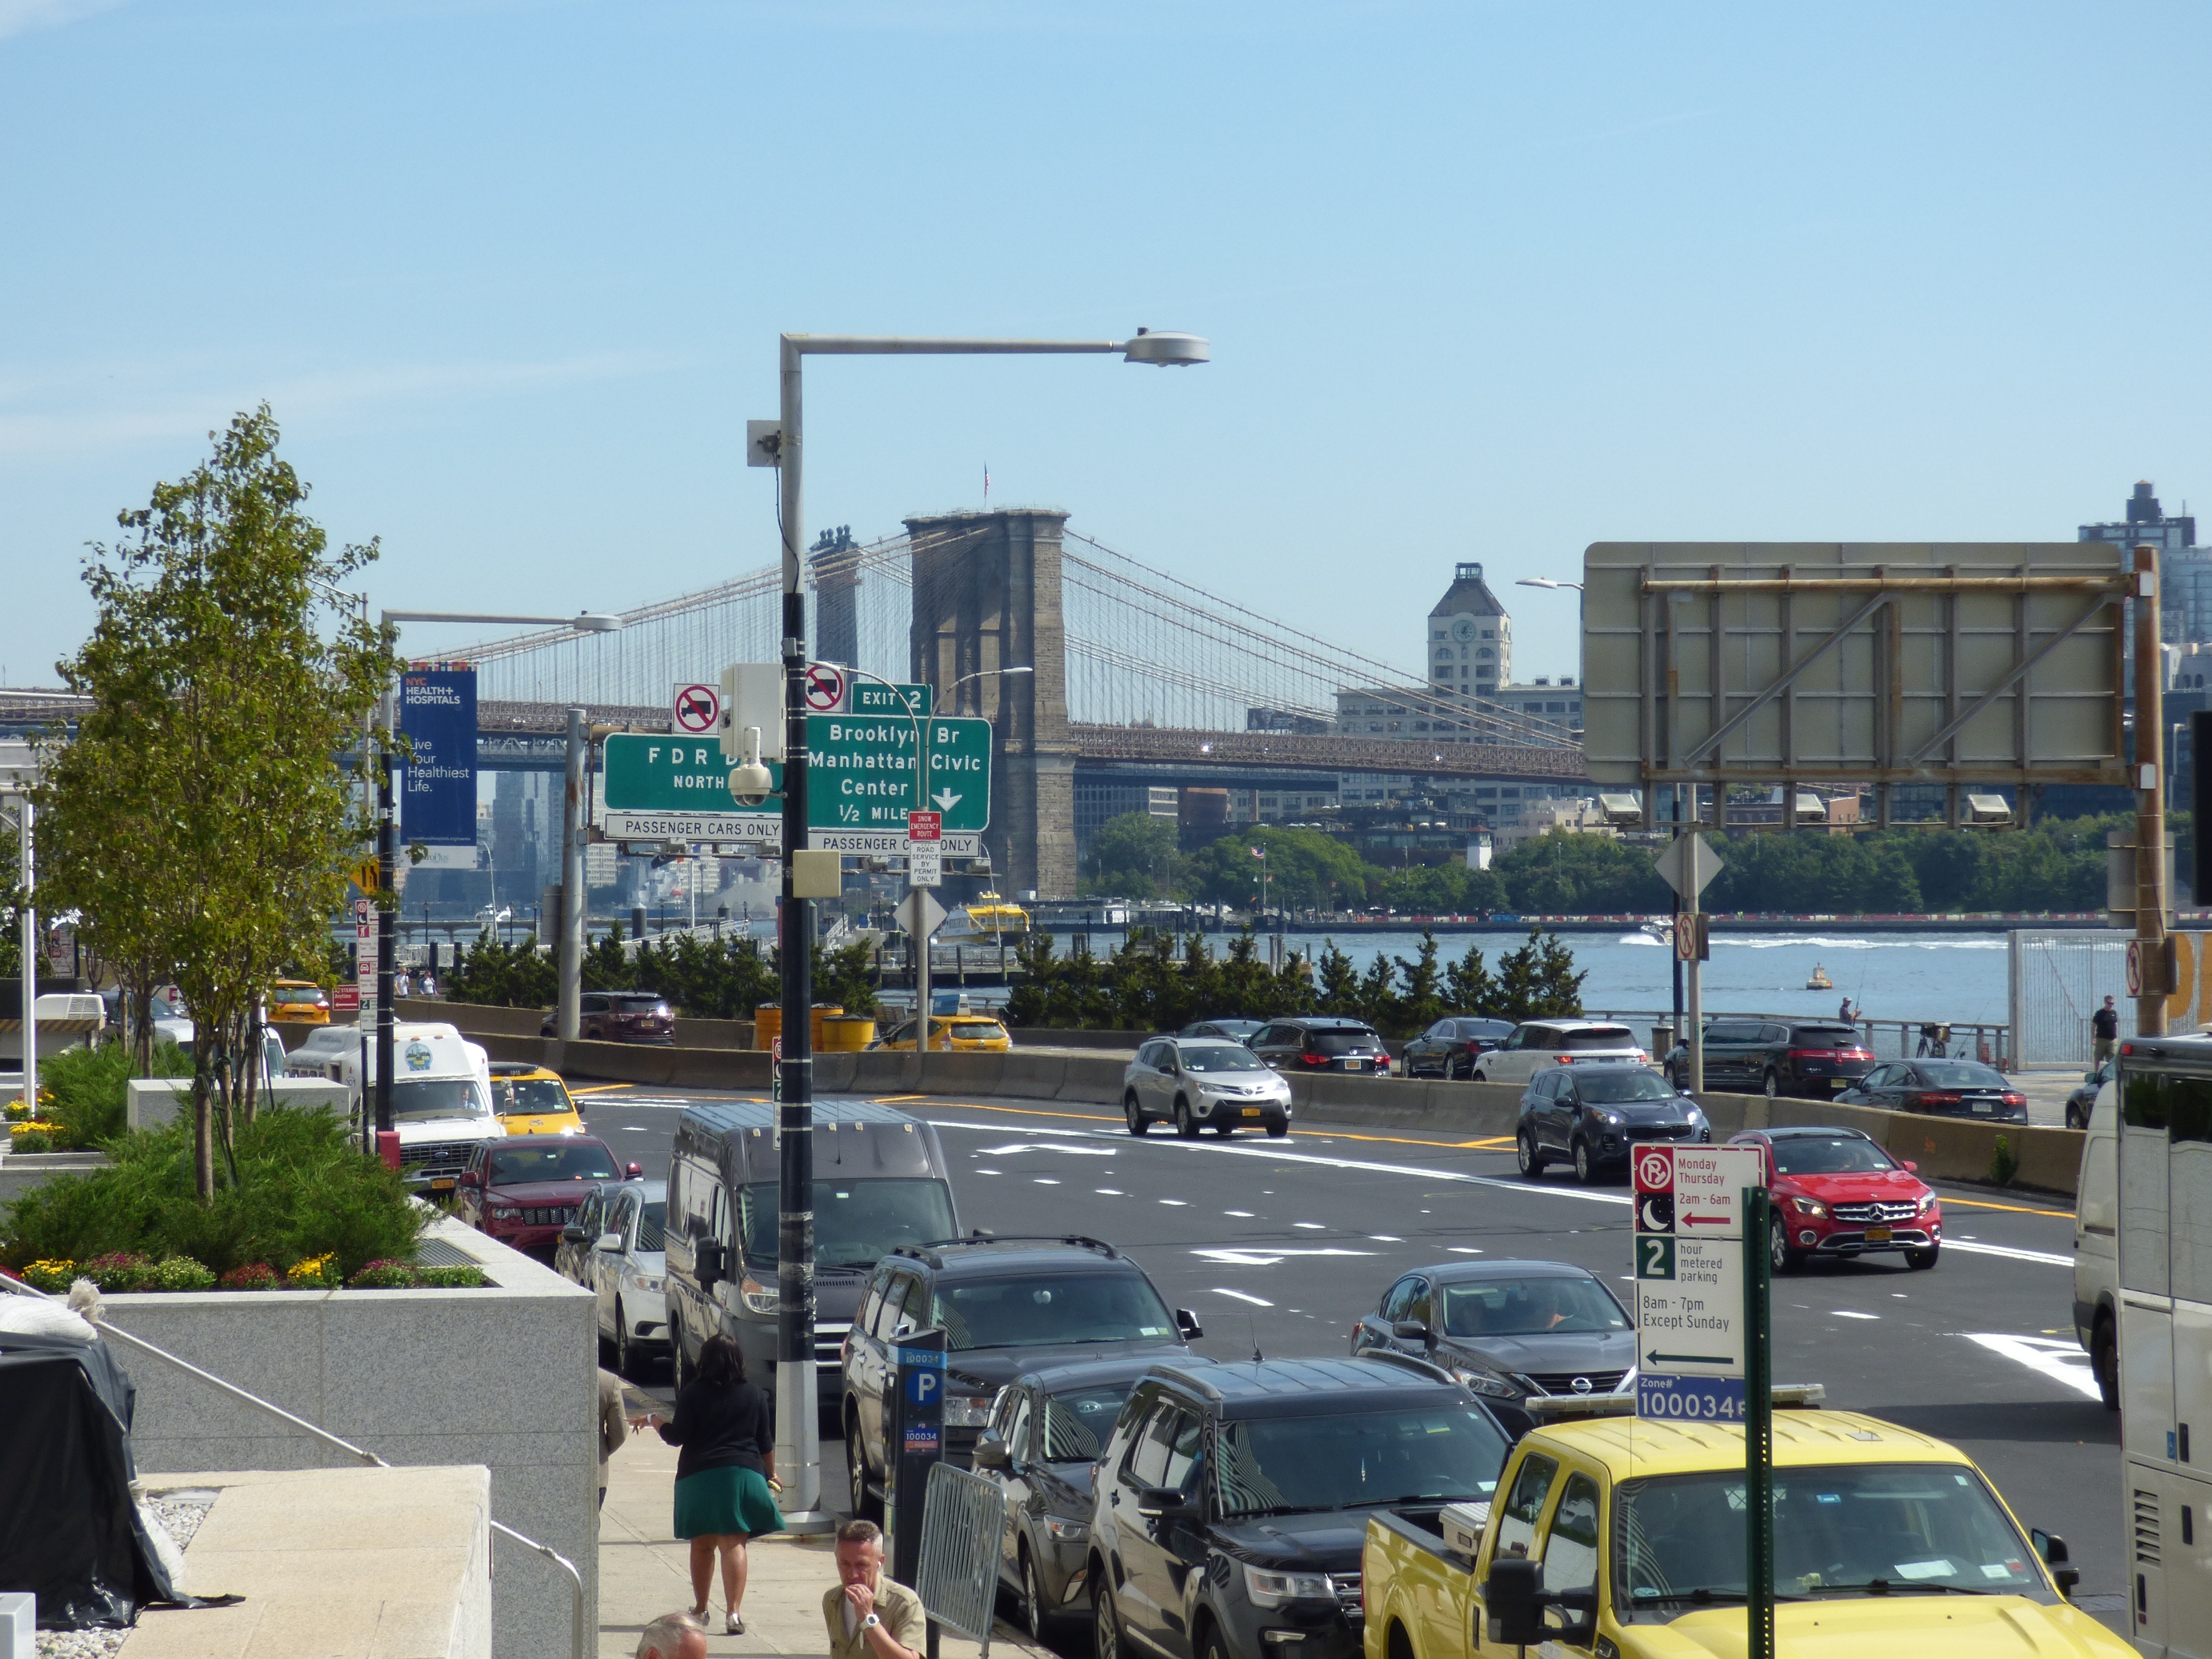 A Brooklyn híd az Egyesült Államok egyik legrégibb függőhídja, Manhattan szigetét köti össze Brooklynnal. A világ első acélkábeles függőhídja volt. Az építése alatt 27 ember vesztette életét.Maga a tervezője sem élhette meg, hogy elkészüljön.